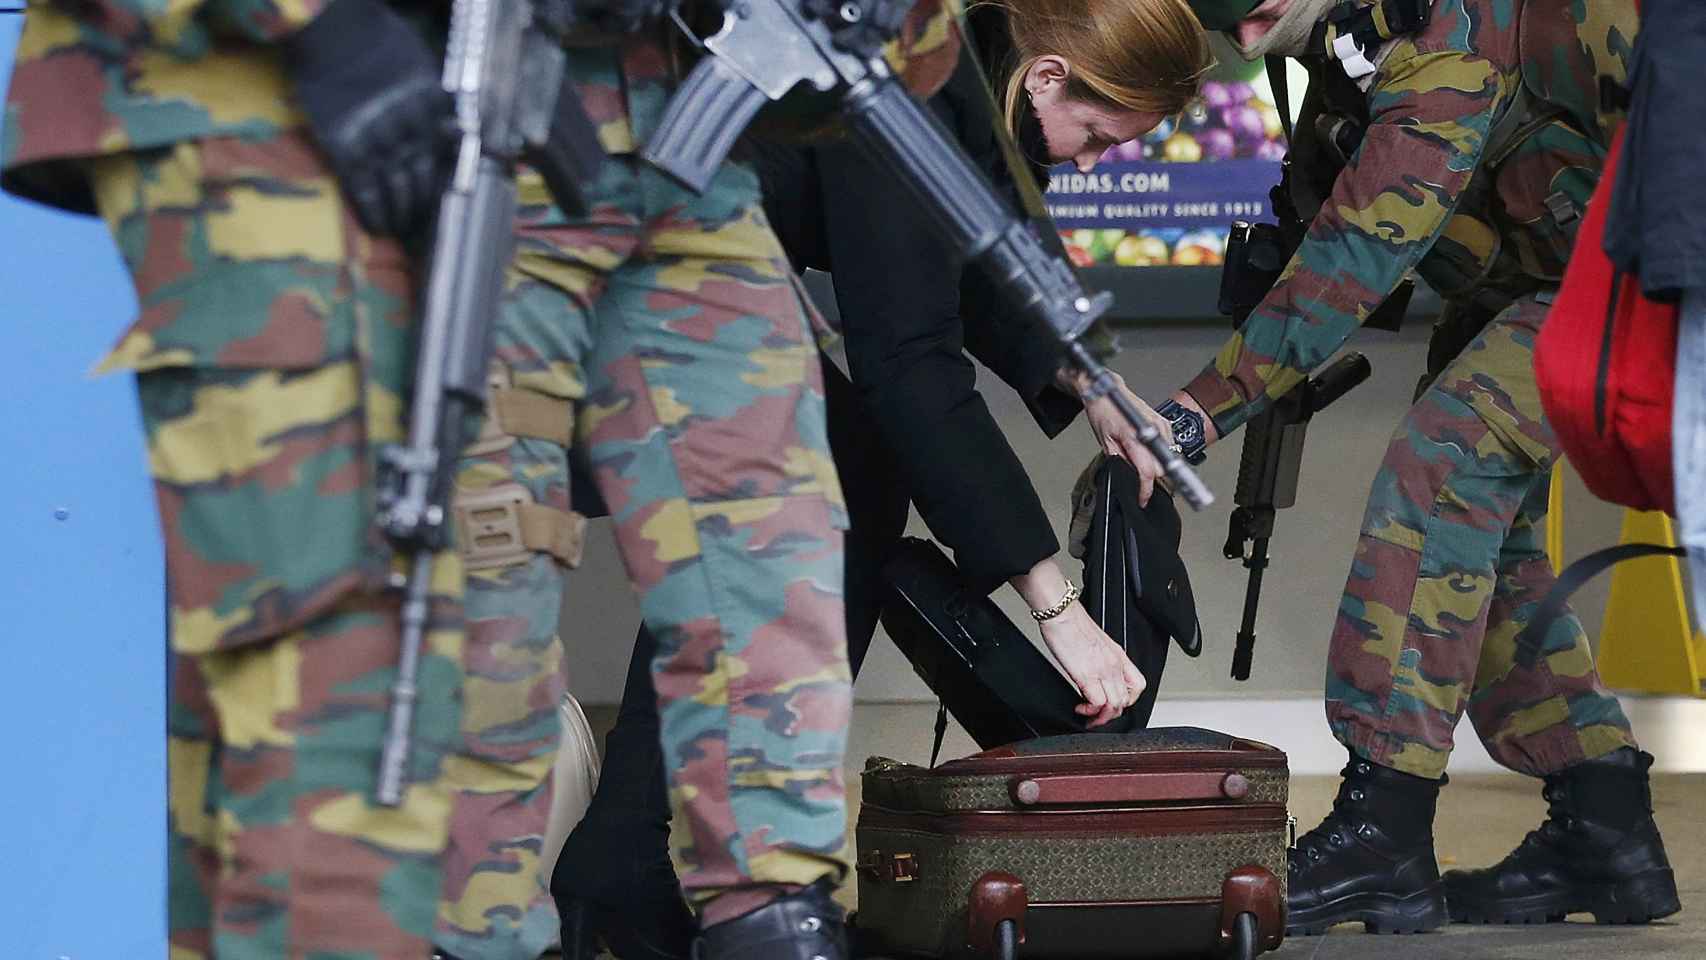 Soldados comprobando el equipaje de una mujer tras los atentados del 22-M.